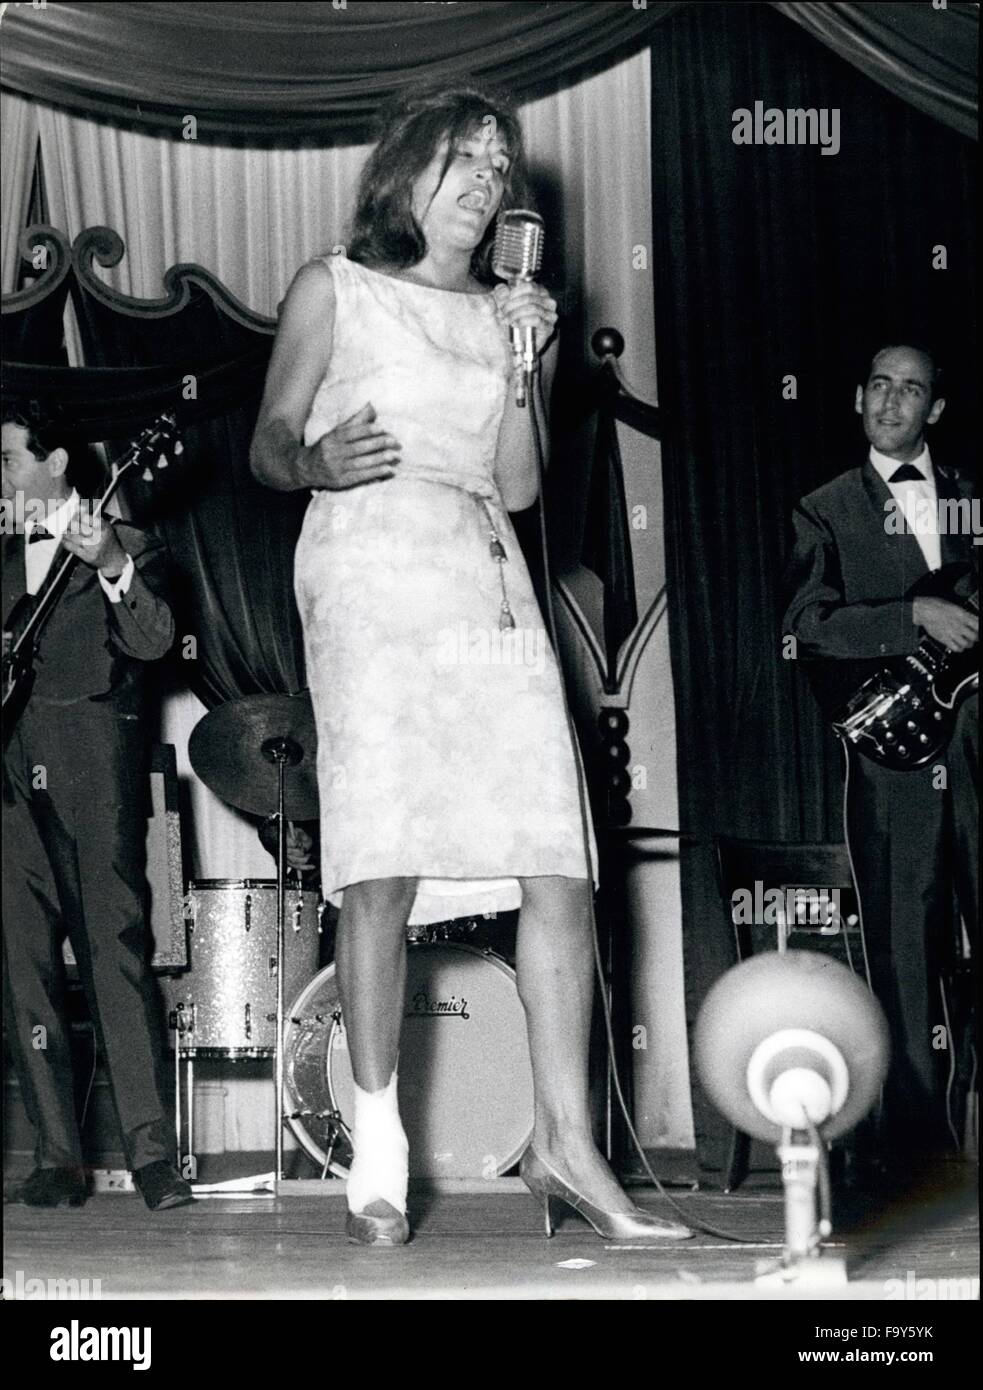 1968 - Roma, 9 de agosto - La cantante francesa DALTDA llegó ayer en Roma  presenta su espectáculo musical en Casina delle Rose: el famoso apareció a  él ventiladores muy tirod y